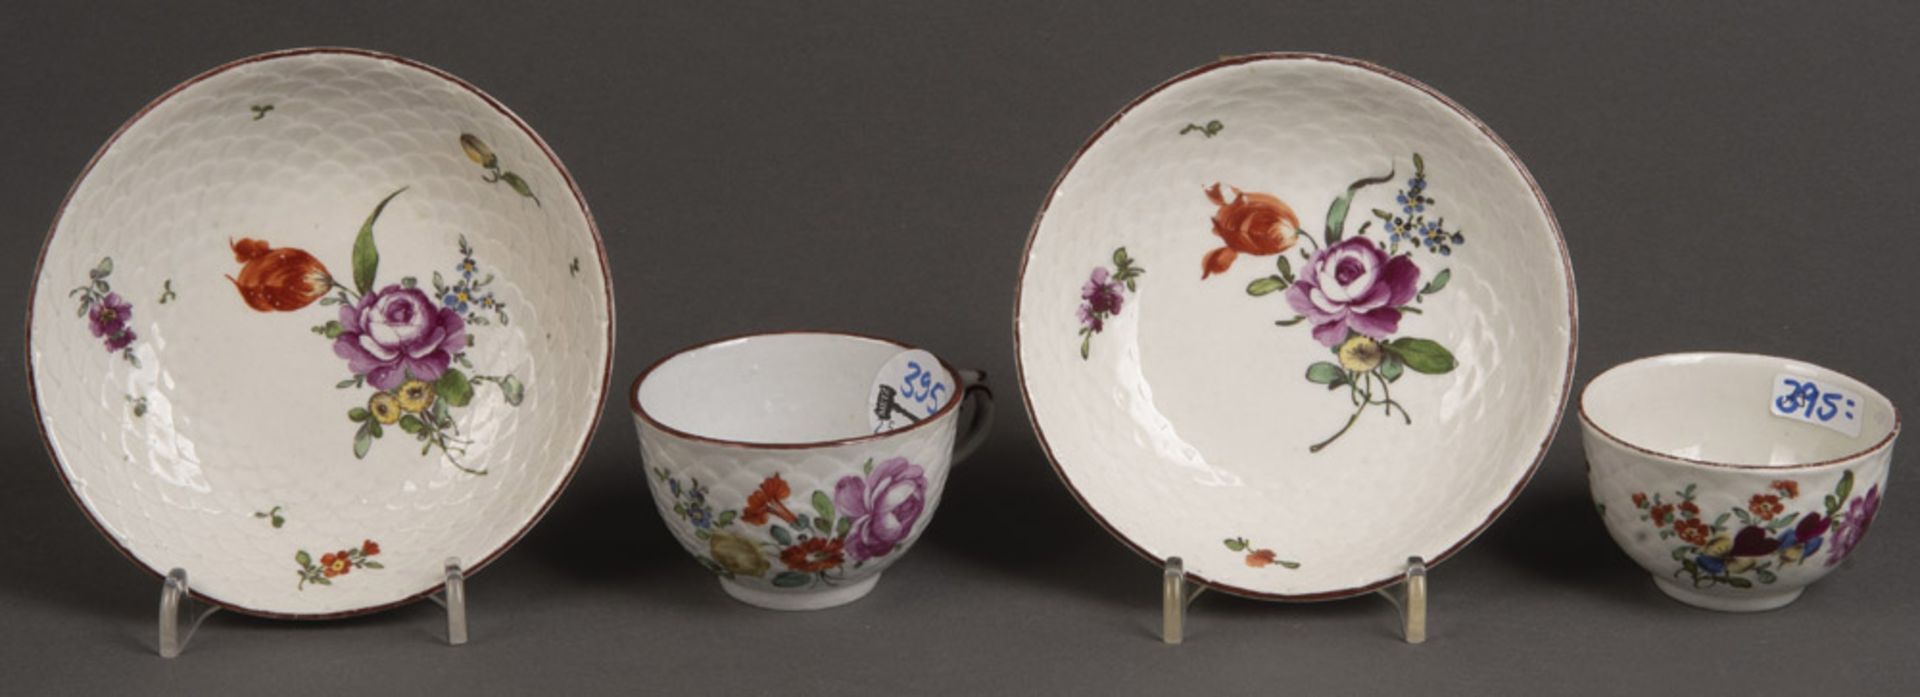 Zwei Tassen mit Unterschalen. Ludwigsburg 1775. Alle Teile bunt bemalt mit Floraldekor. Porzellan,